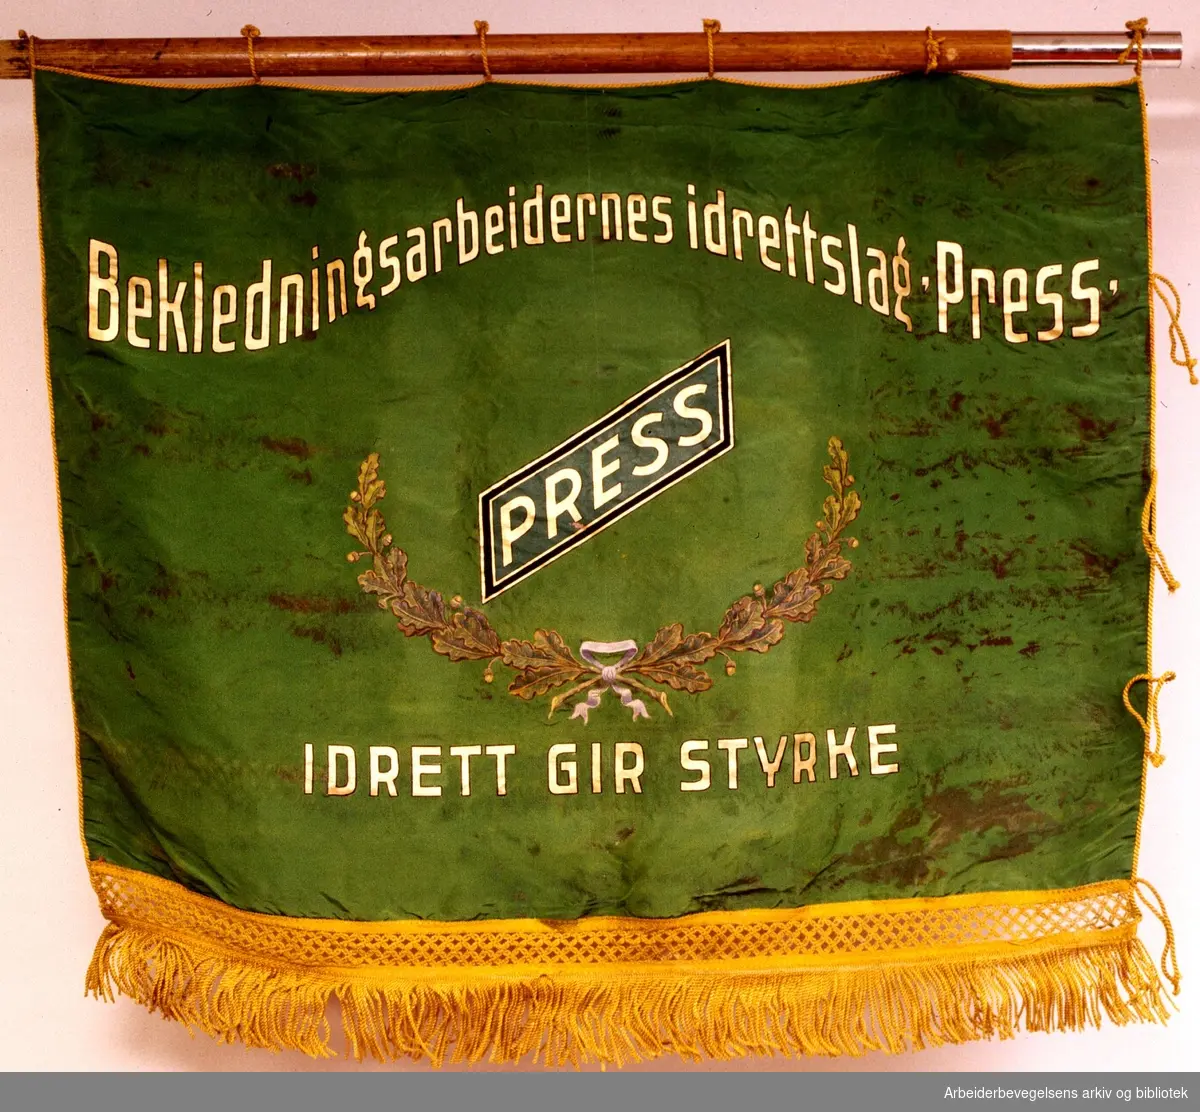 Bekledningsarbeidernes idrettslag Press.Stiftet 25. mai 1932..Bakside..Fanetekst: Bekledningsarbeidernes idrettslag "PRESS". Idrett gir styrke...